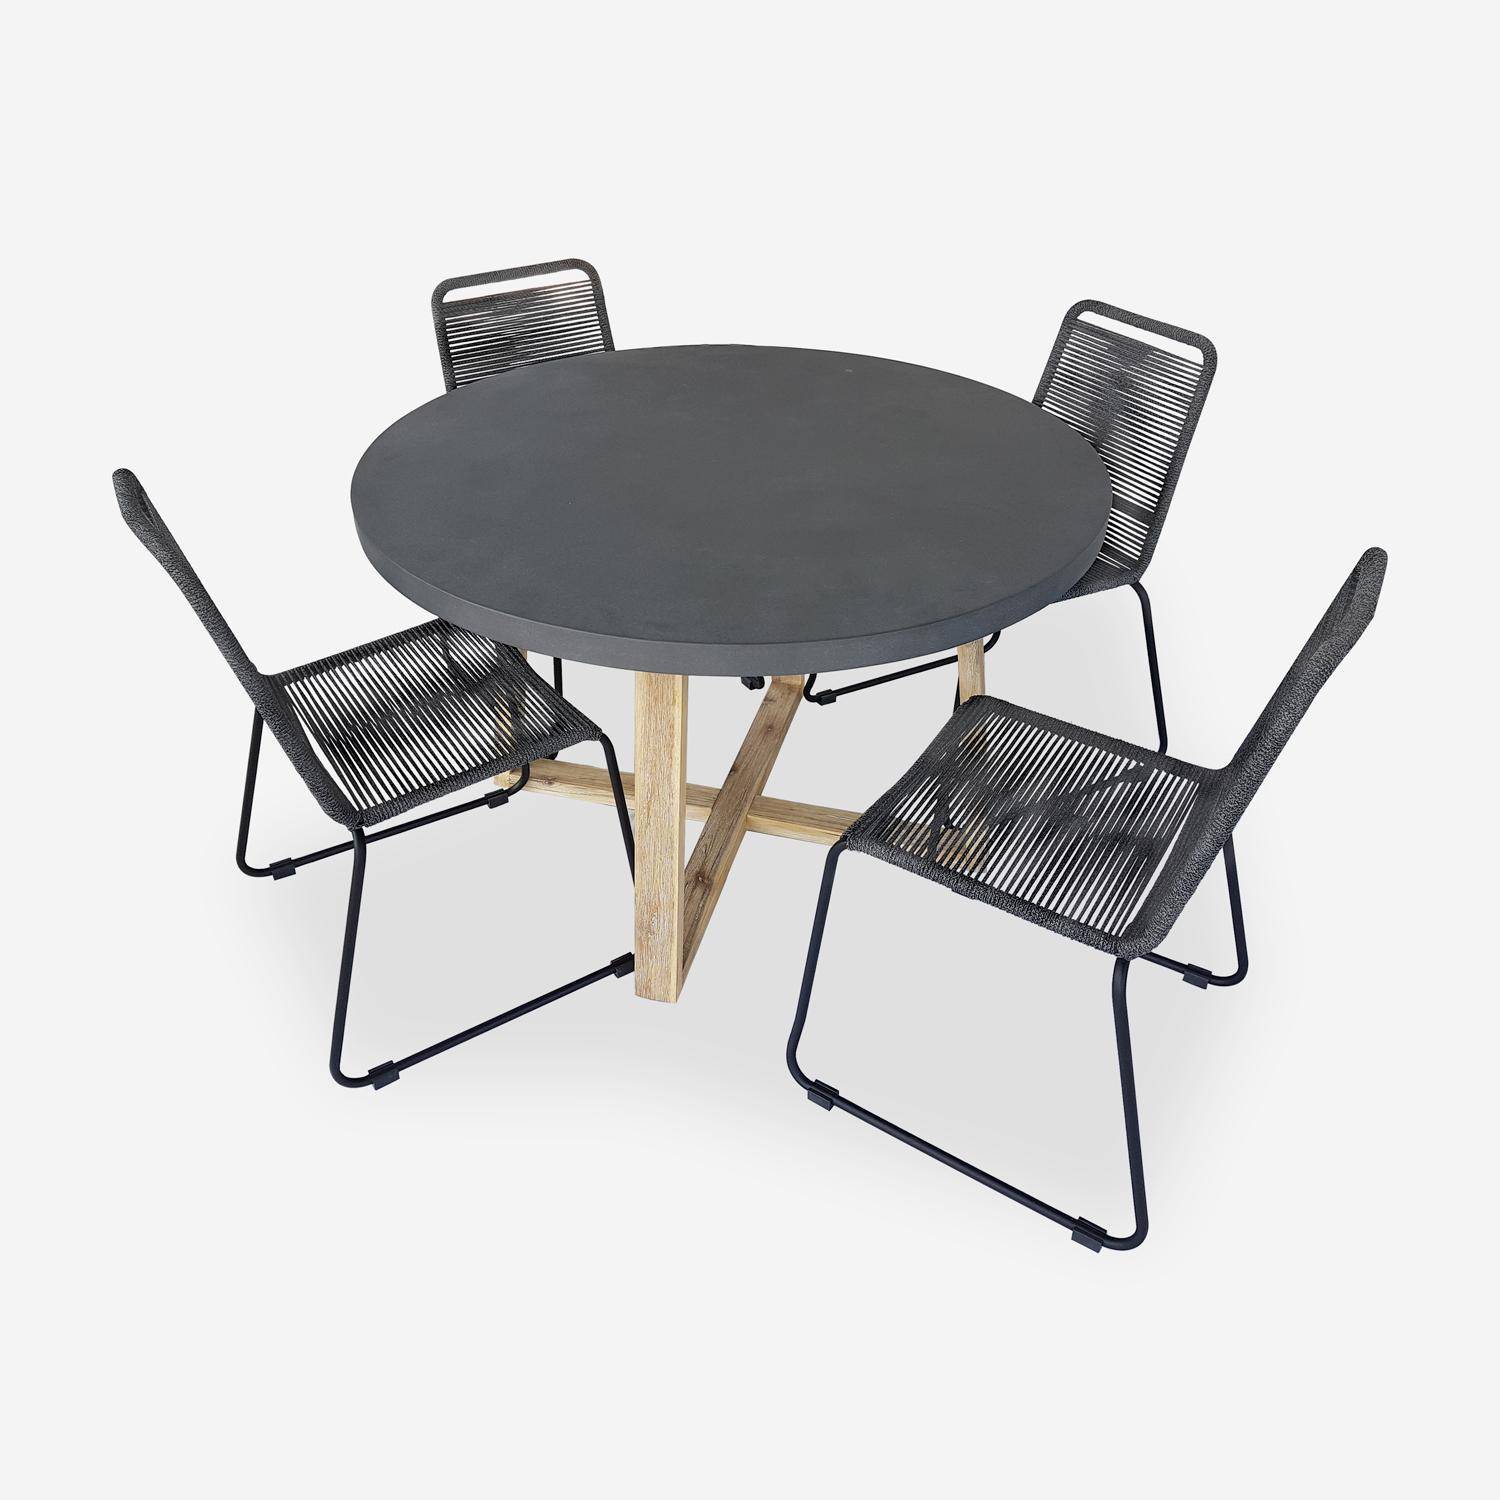 Table de jardin ronde en fibre de ciment, effet béton, Ø120cm Borneo et chaises de jardin Brasilia en corde gris chiné empilables Photo1